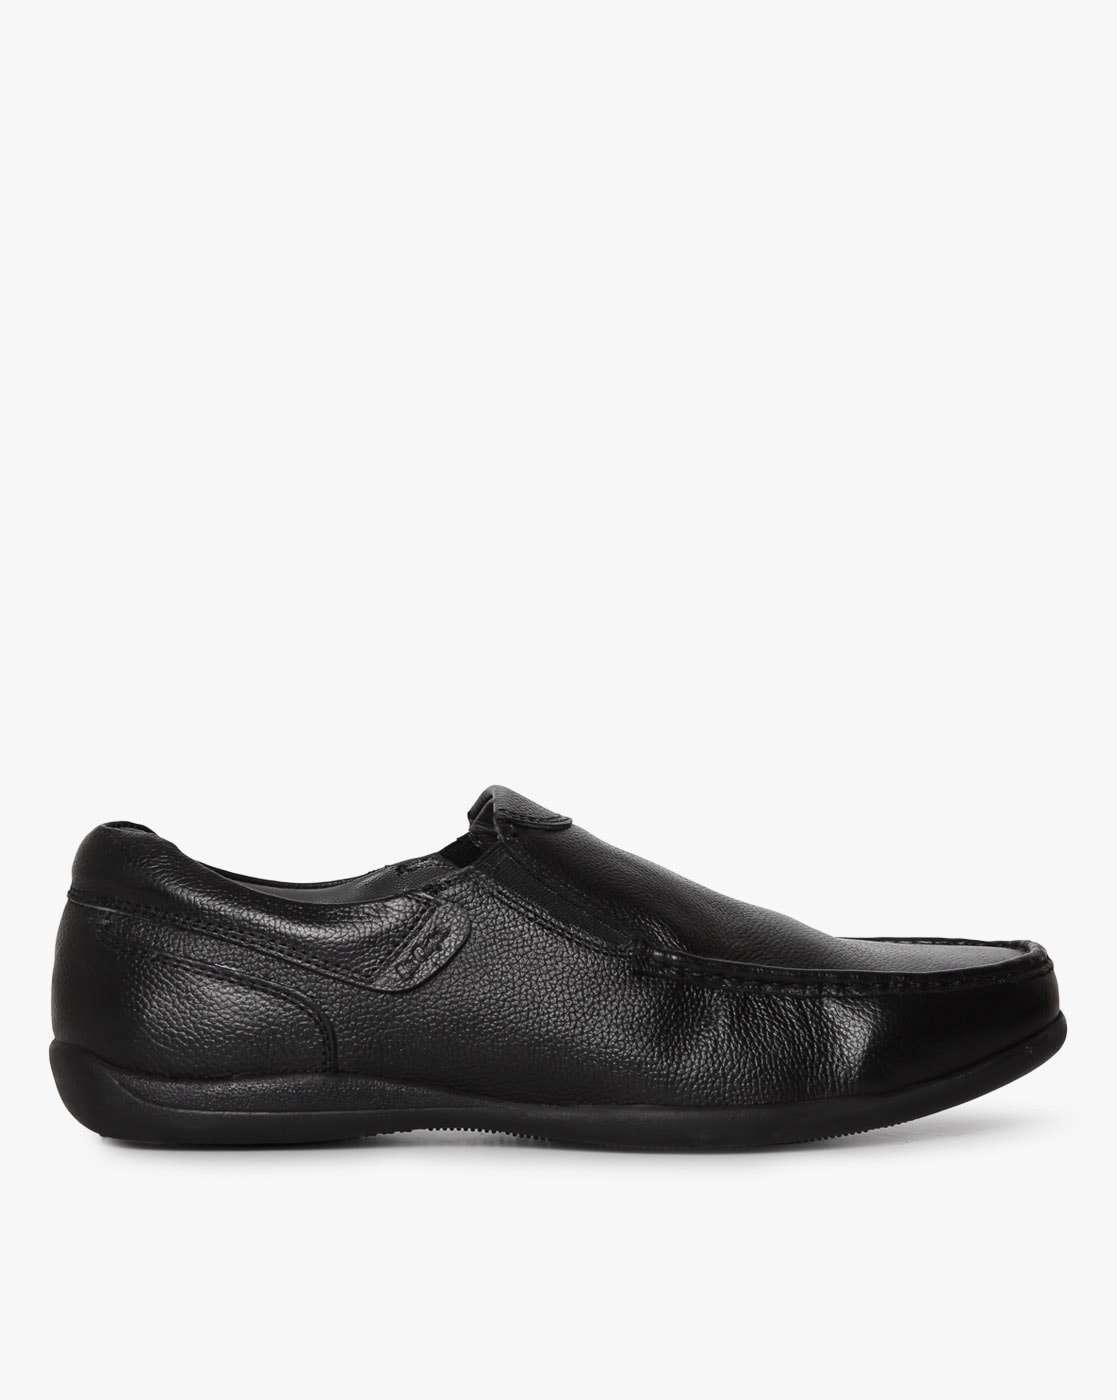 lee cooper shoes mens formal